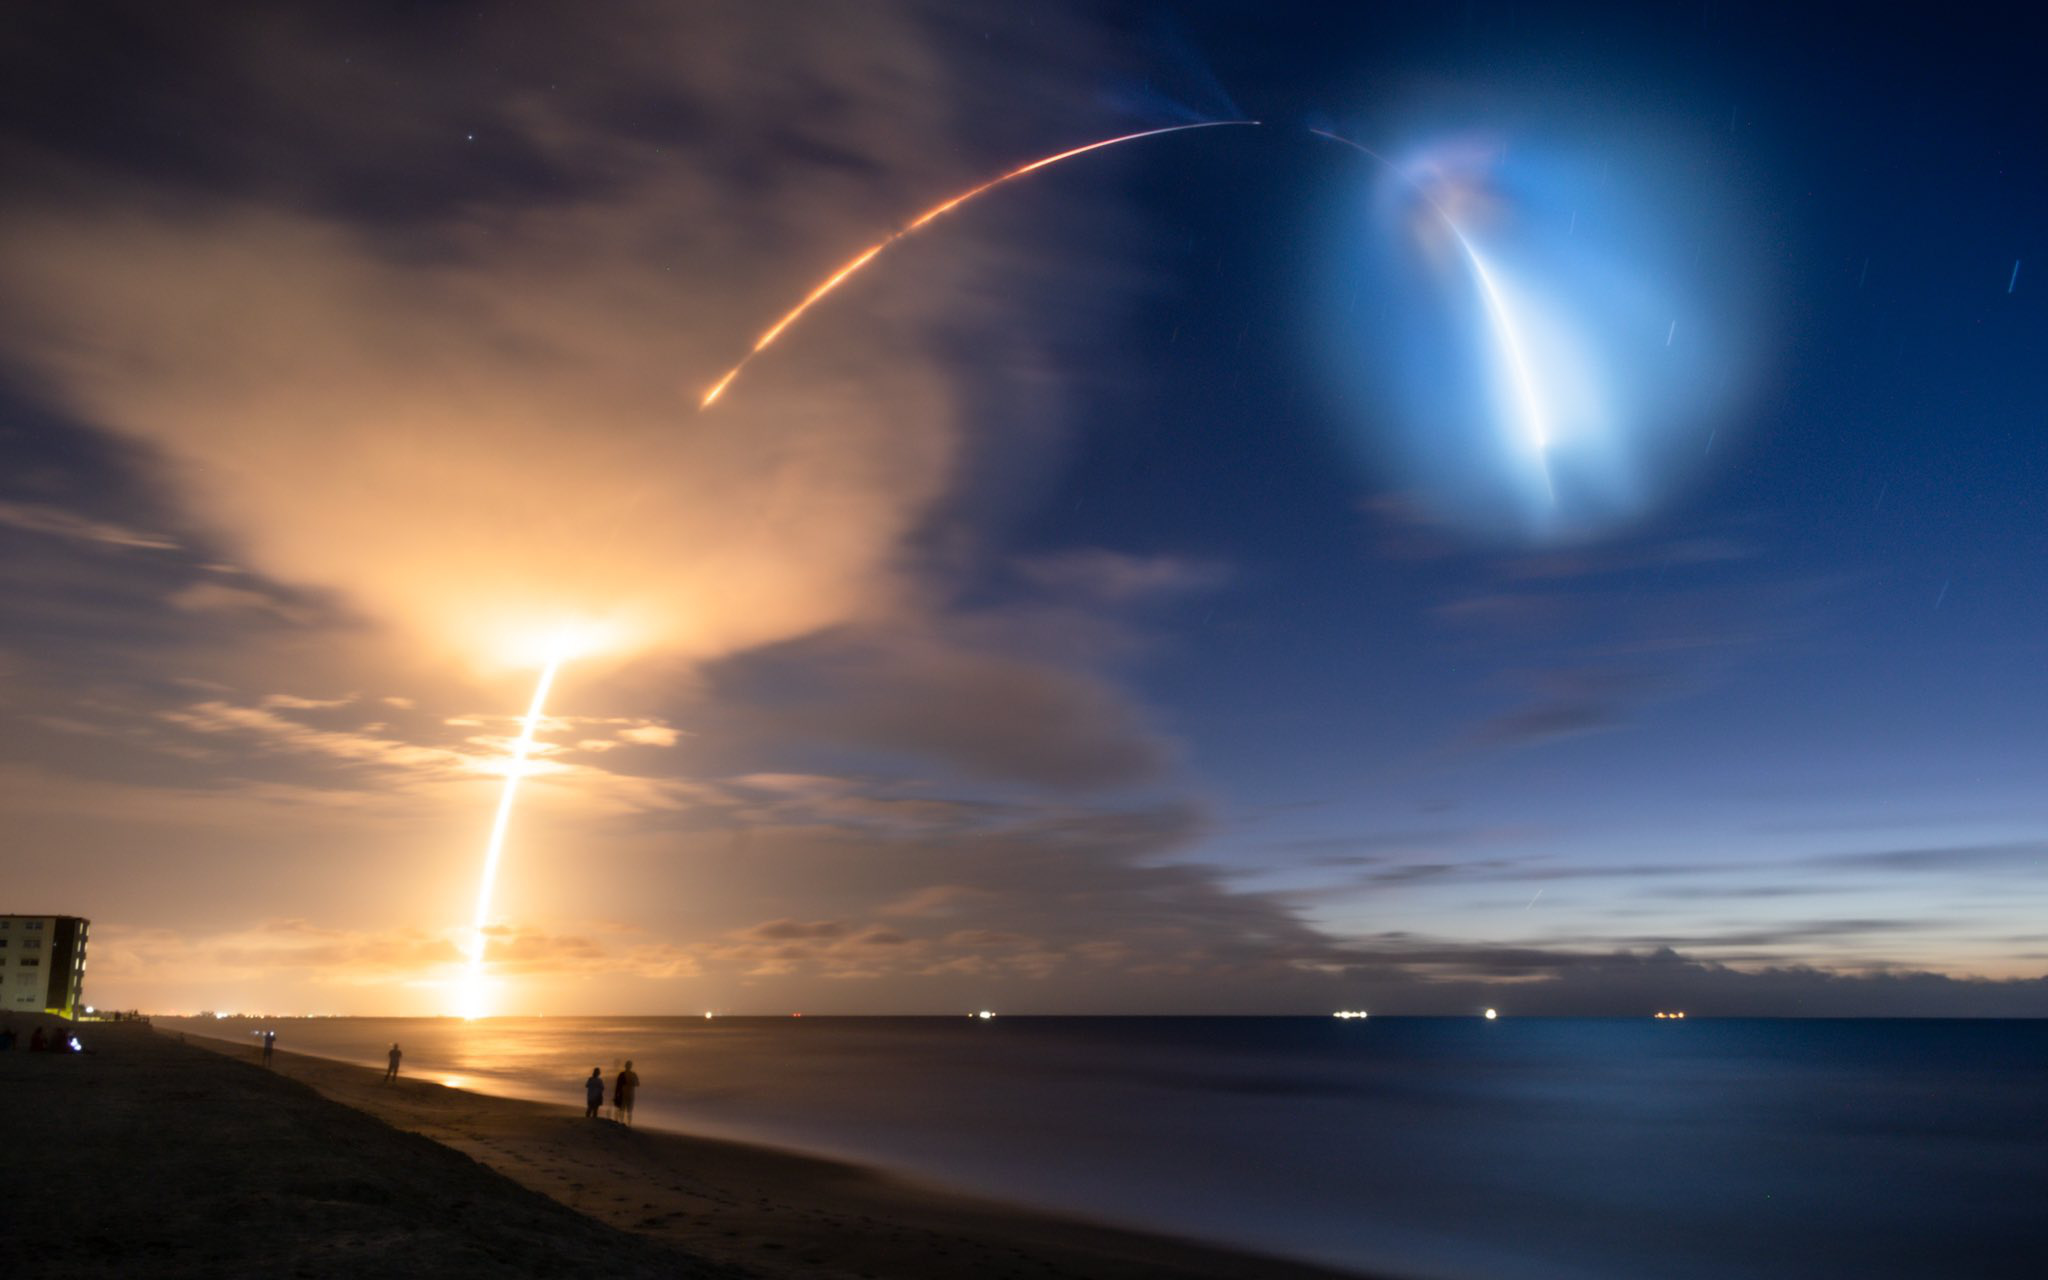 Màn phóng tàu thành công của SpaceX gây ra mây dạ quang - hiện tượng thiên nhiên hiếm gặp và đẹp mê hồn